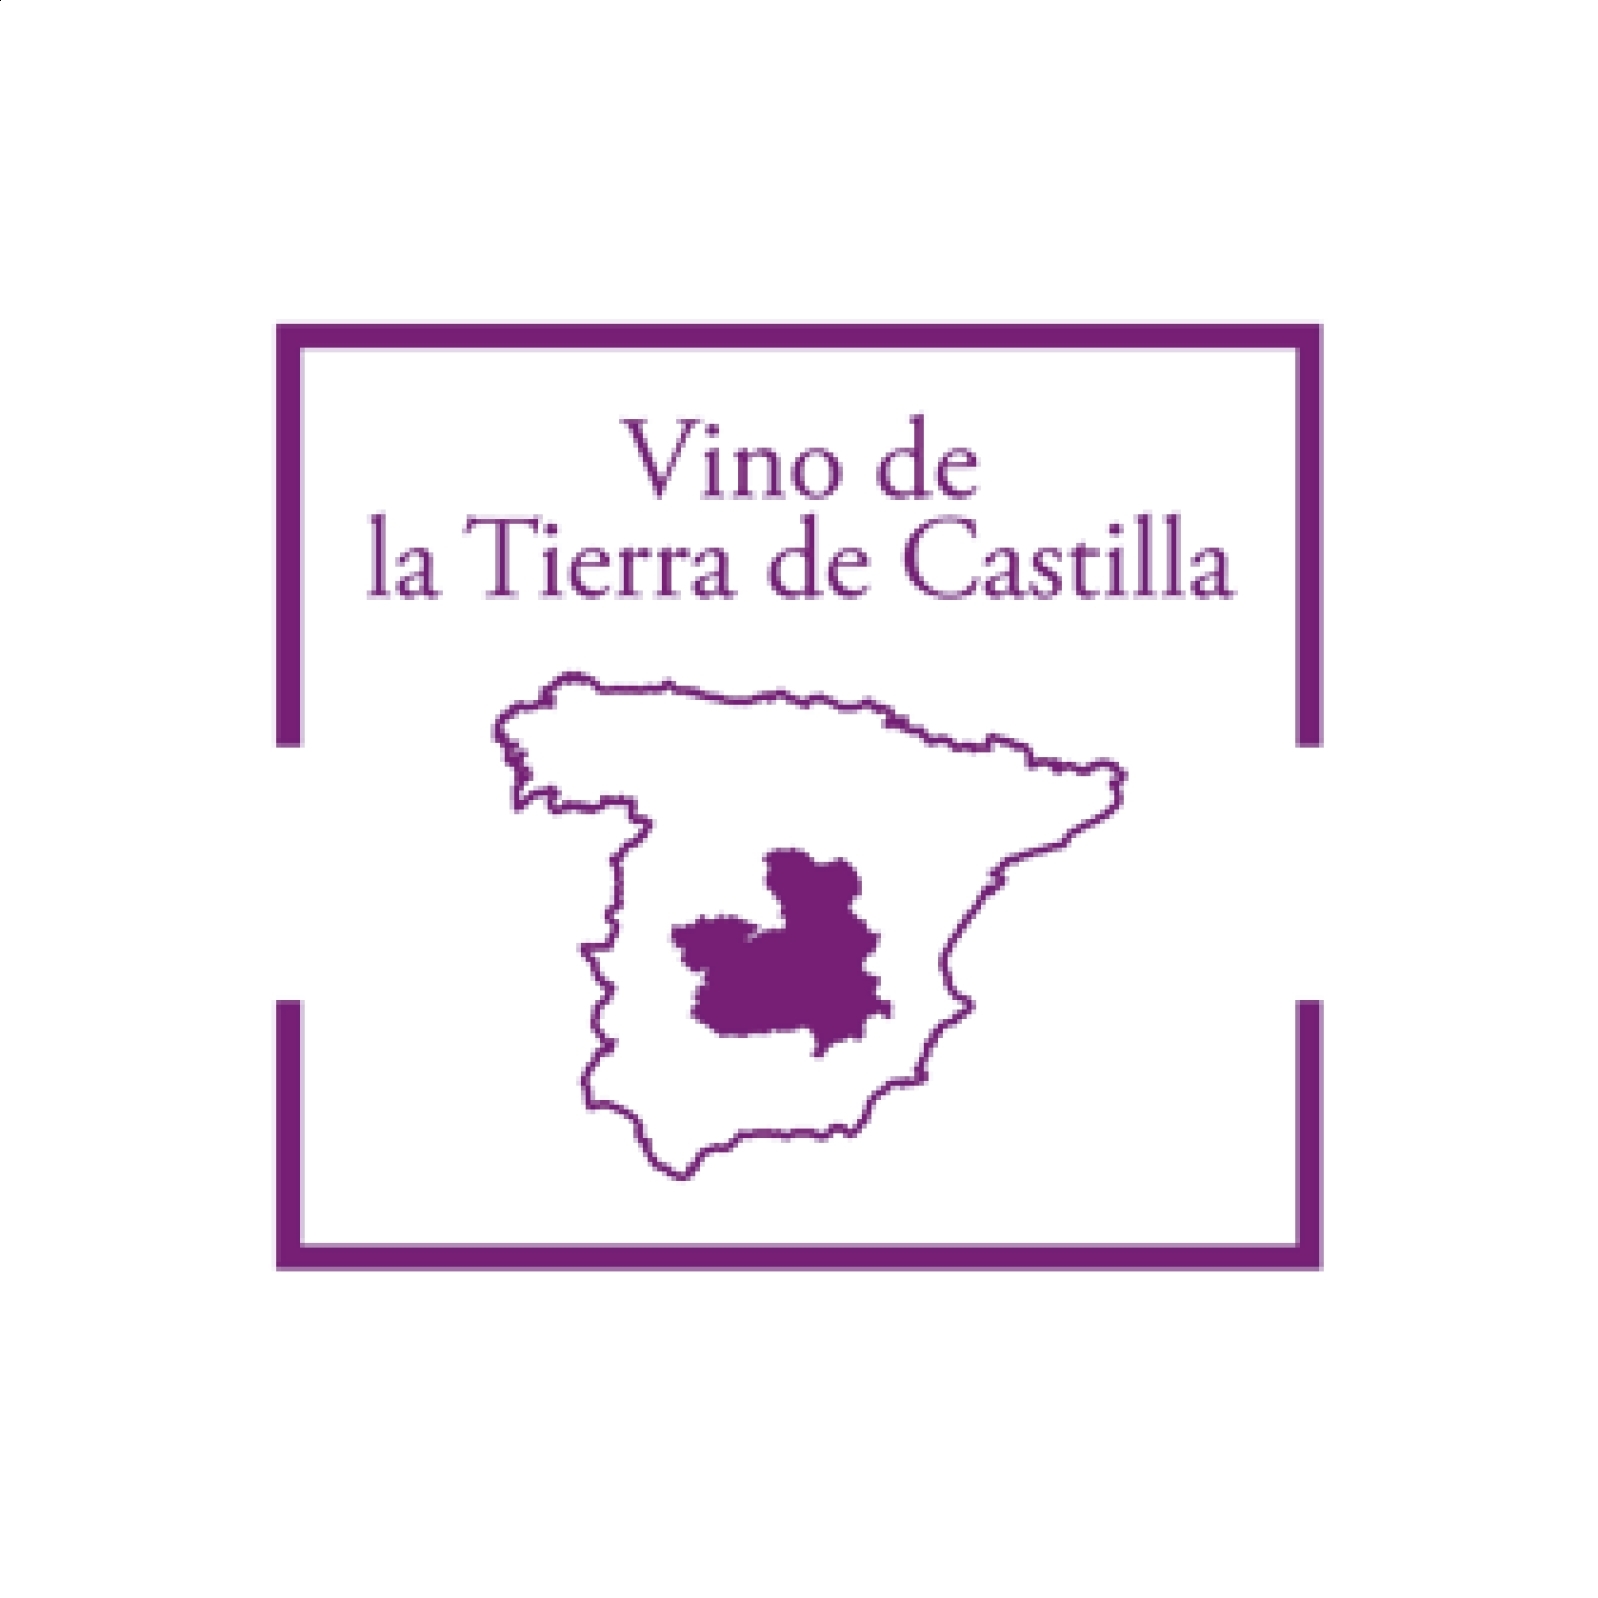 Finca Río Negro - Lote de vino tinto IGP Vino de la Tierra de Castilla 75cl, 3uds